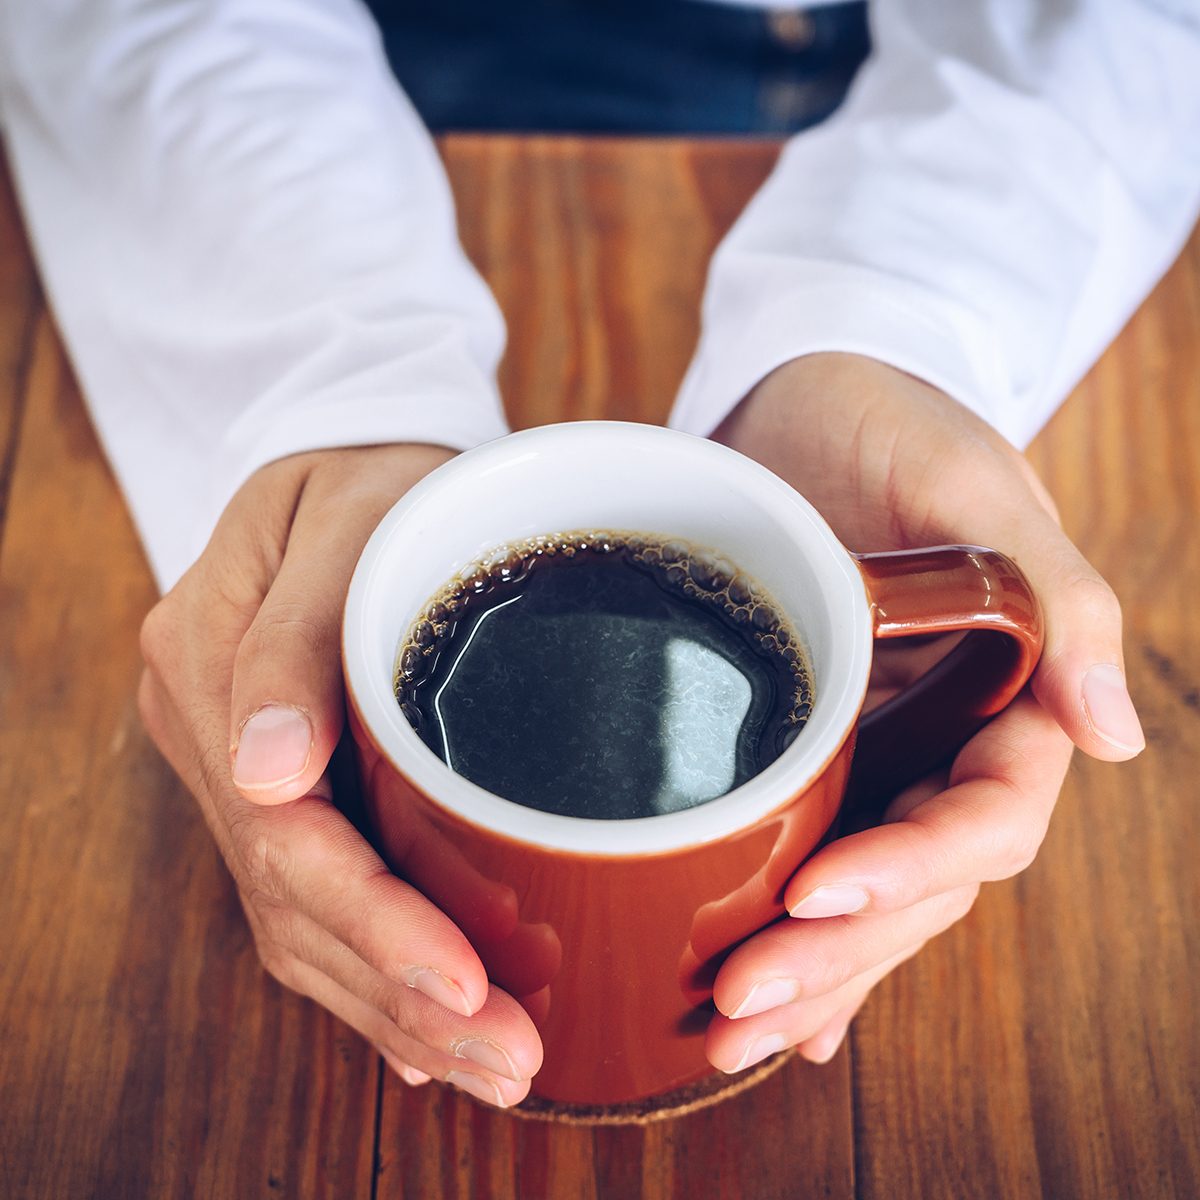 黑咖啡就是不添加糖、牛奶、奶油或其他添加剂的咖啡。